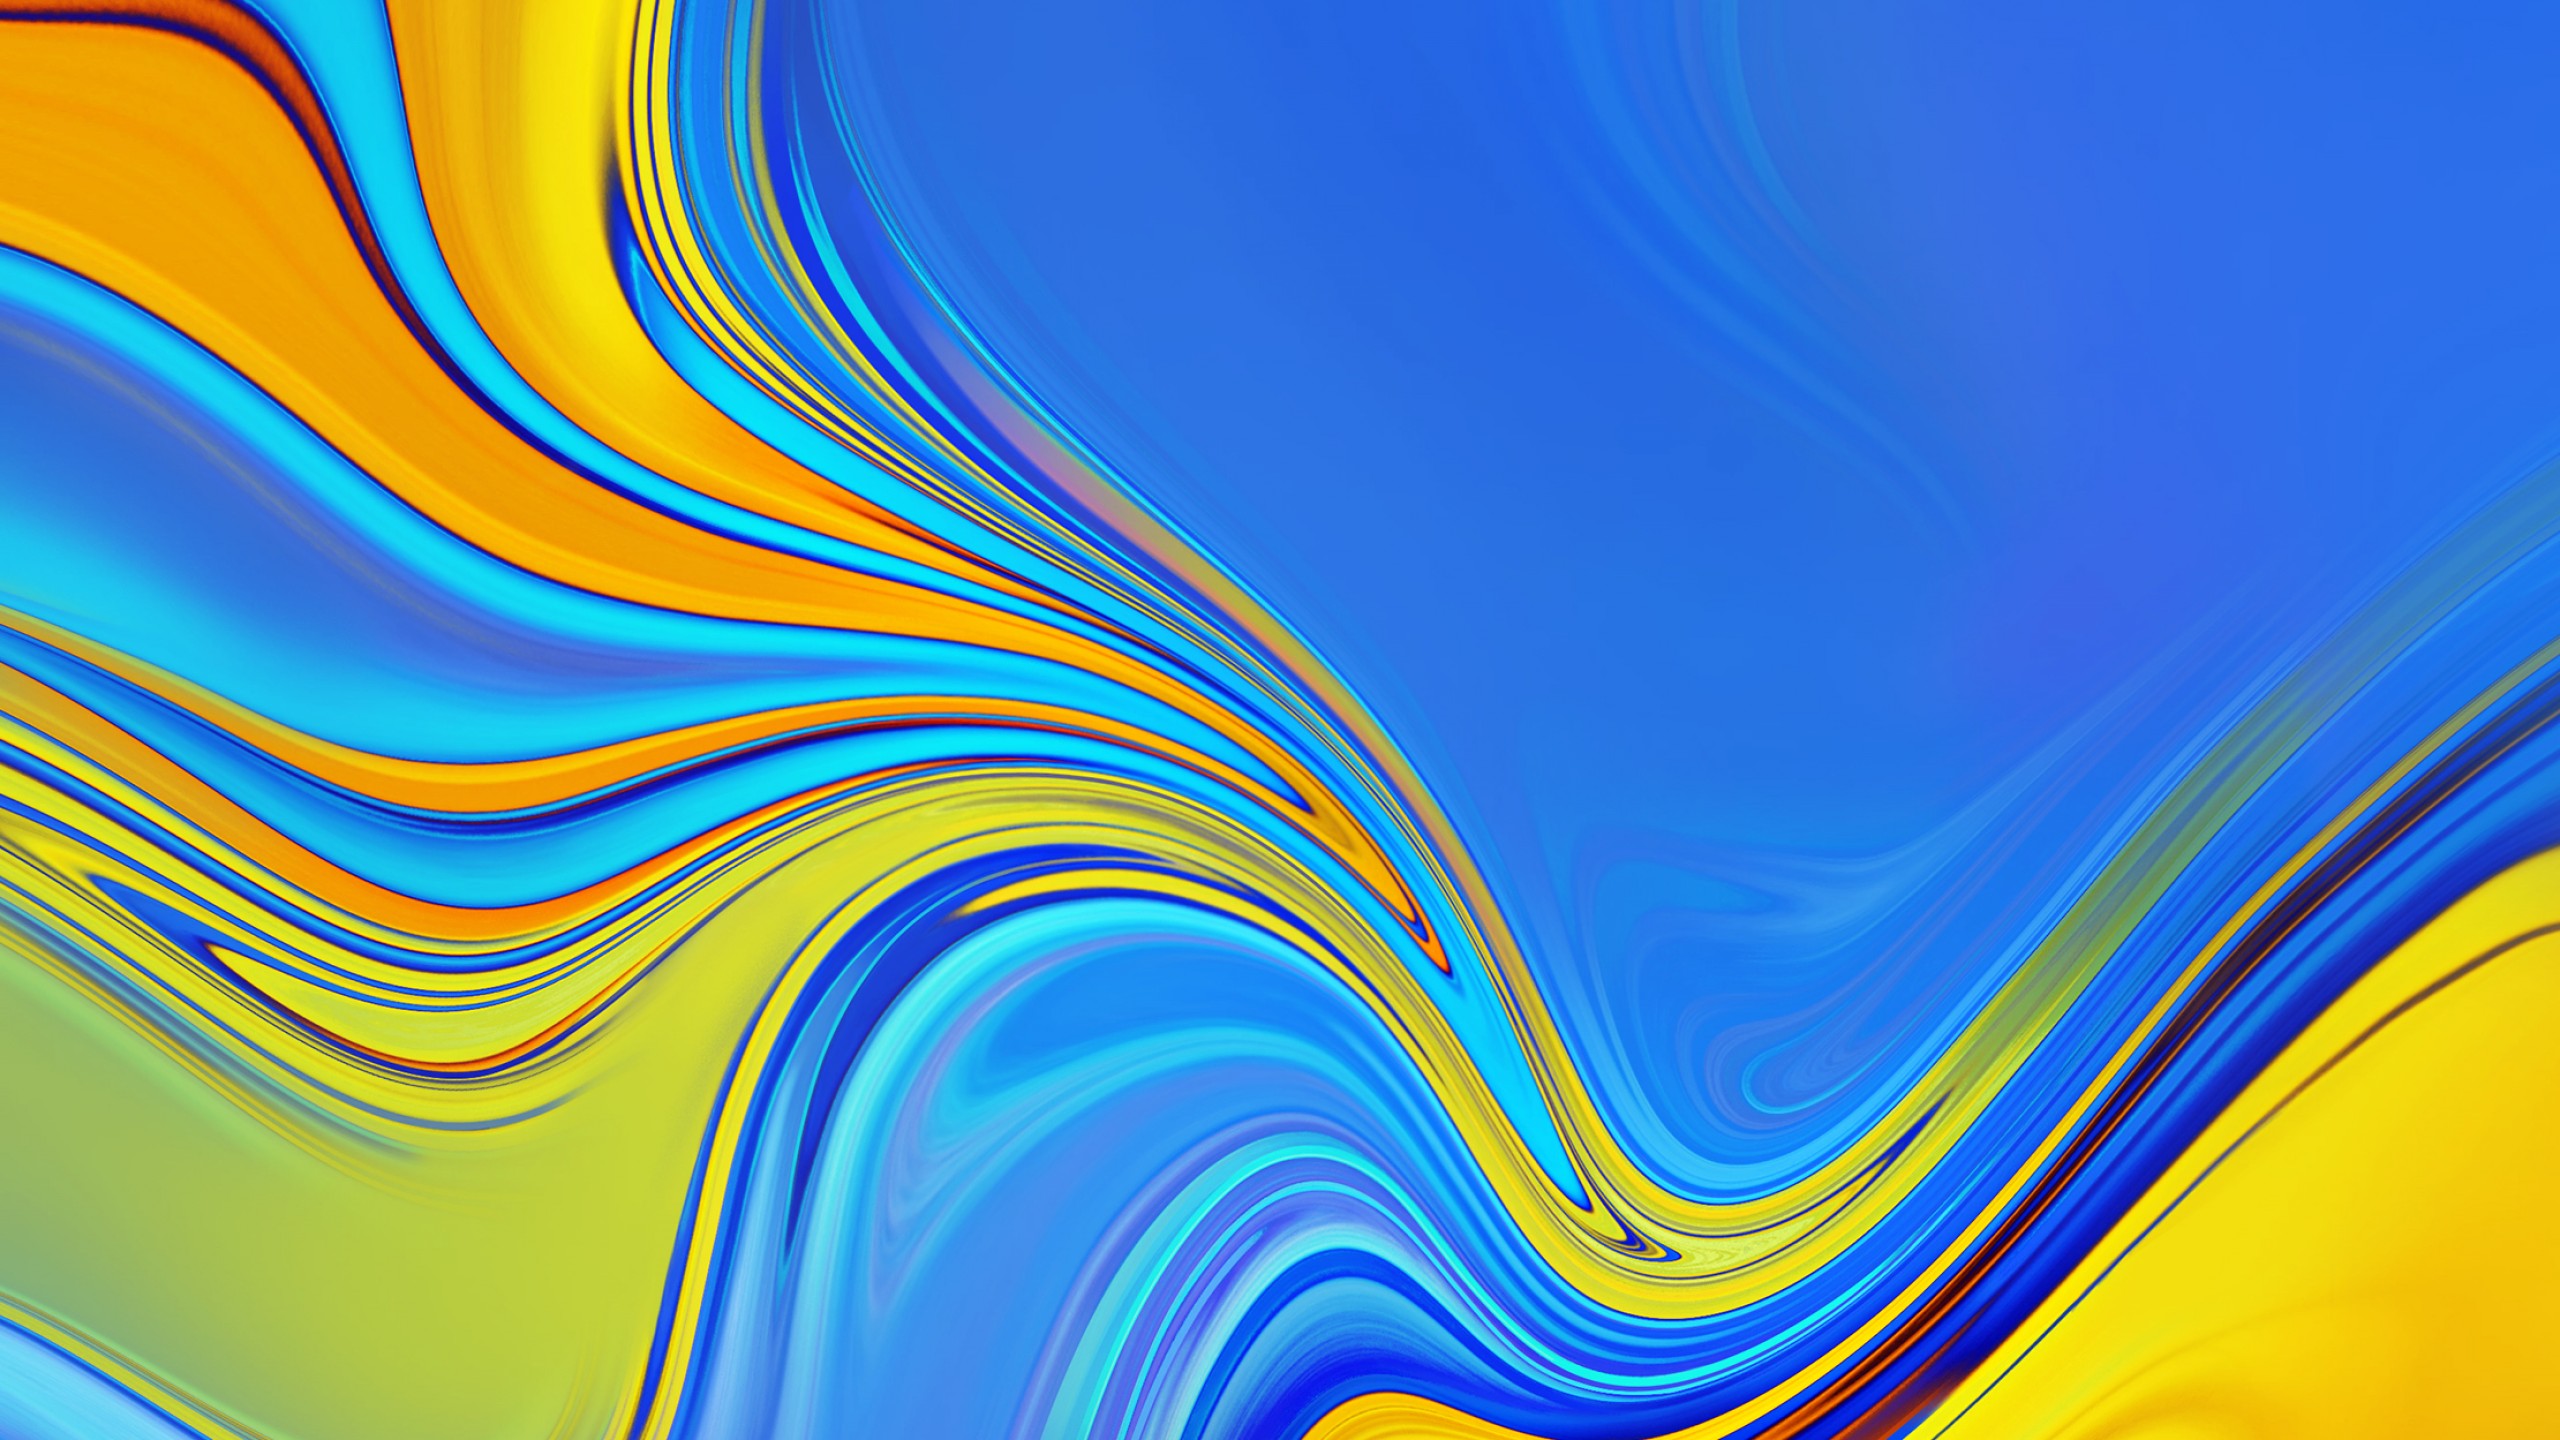 안드로이드에 대한 삼성의 hd 벽지,푸른,노랑,화려 함,무늬,선